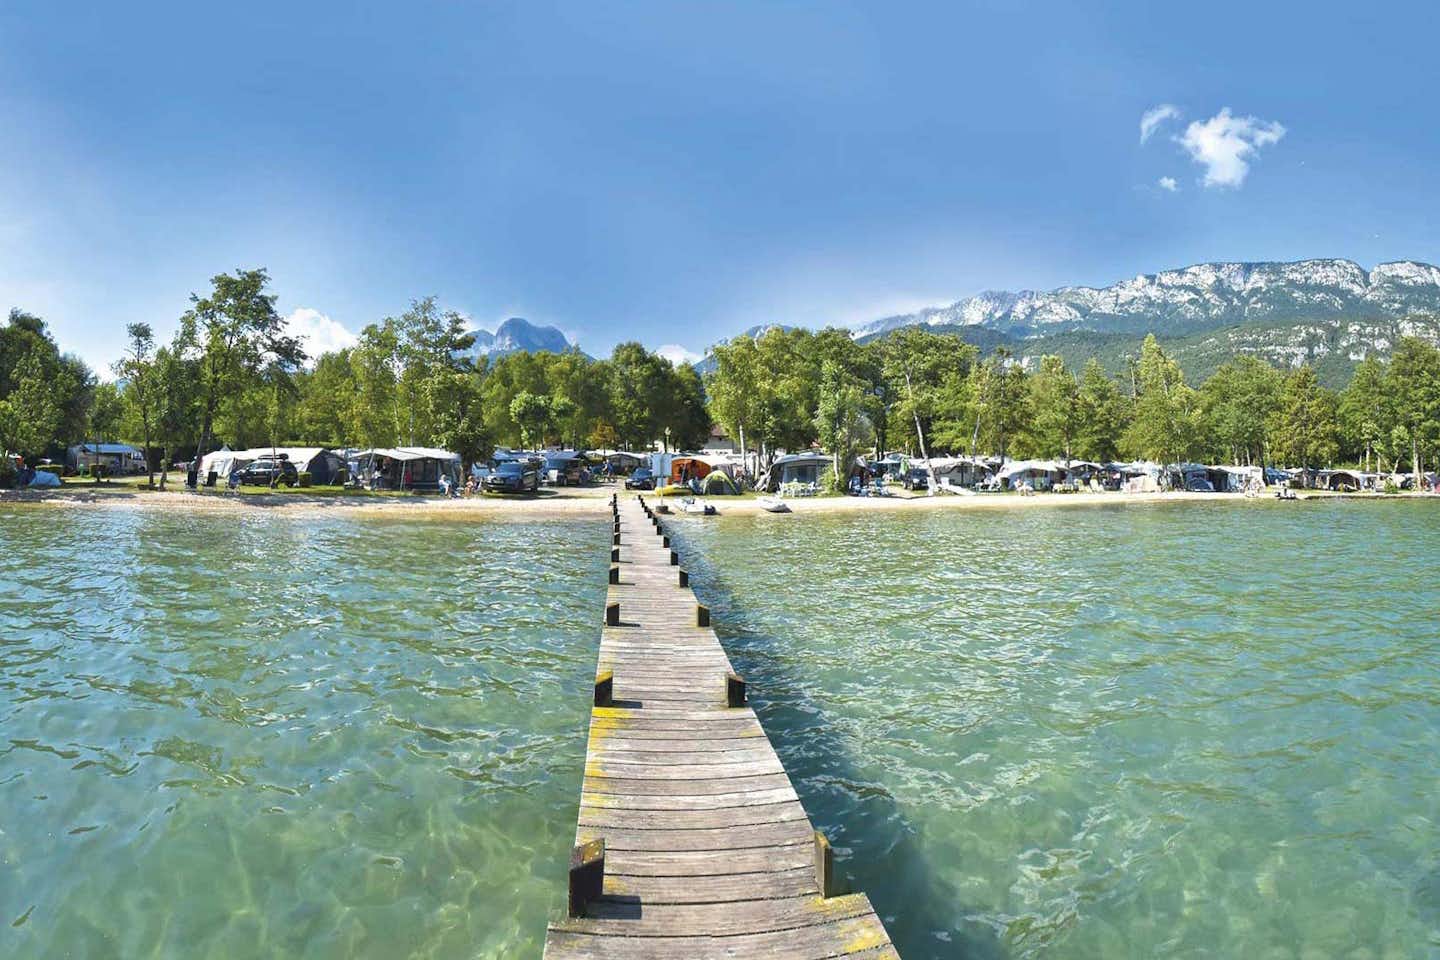 Camping International du Lac Bleu  - Blick auf den Campingplatz am See Lac d'Annecy in den Alpen